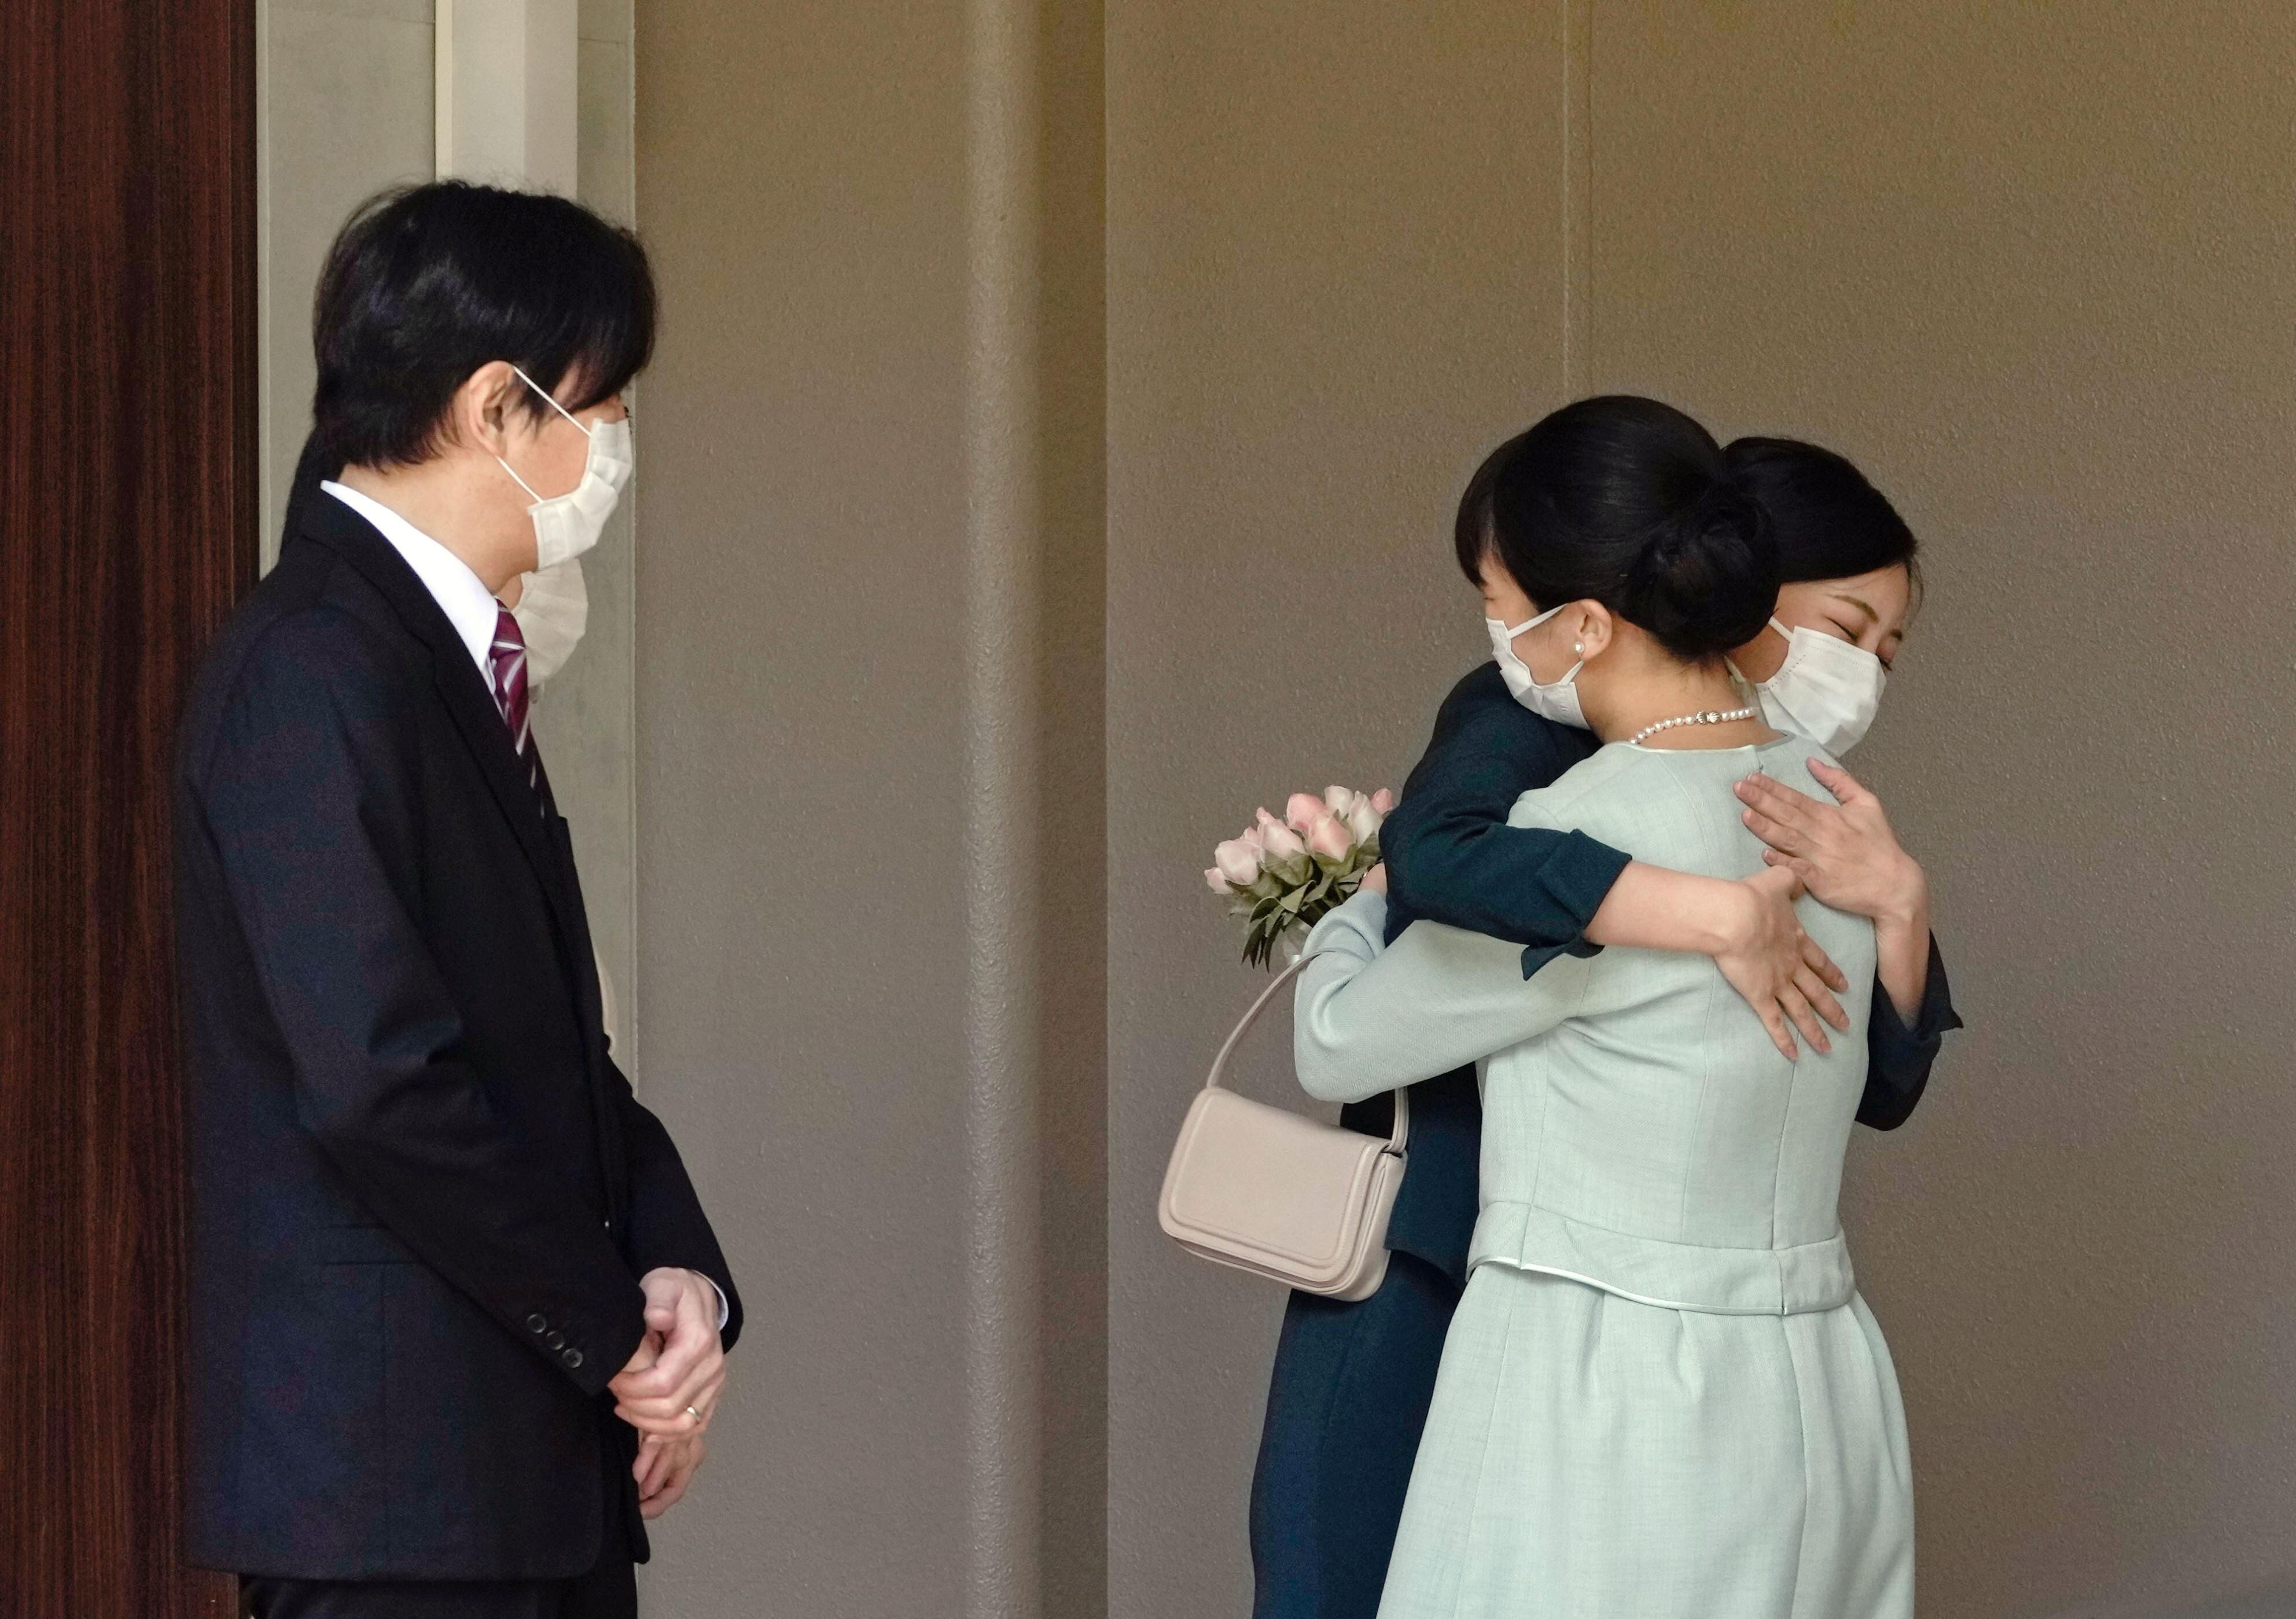 La princesa Mako de Japón abraza a su hermana, la princesa Kako, y son observadas por sus padres, el príncipe heredero Akishino y la princesa heredera Kiko, antes de salir de su casa para casarse en Akasaka Estate en Tokio, Japón, el 26 de octubre de 2021 en esta foto tomada por Kyodo. Kyodo / via REUTERS 